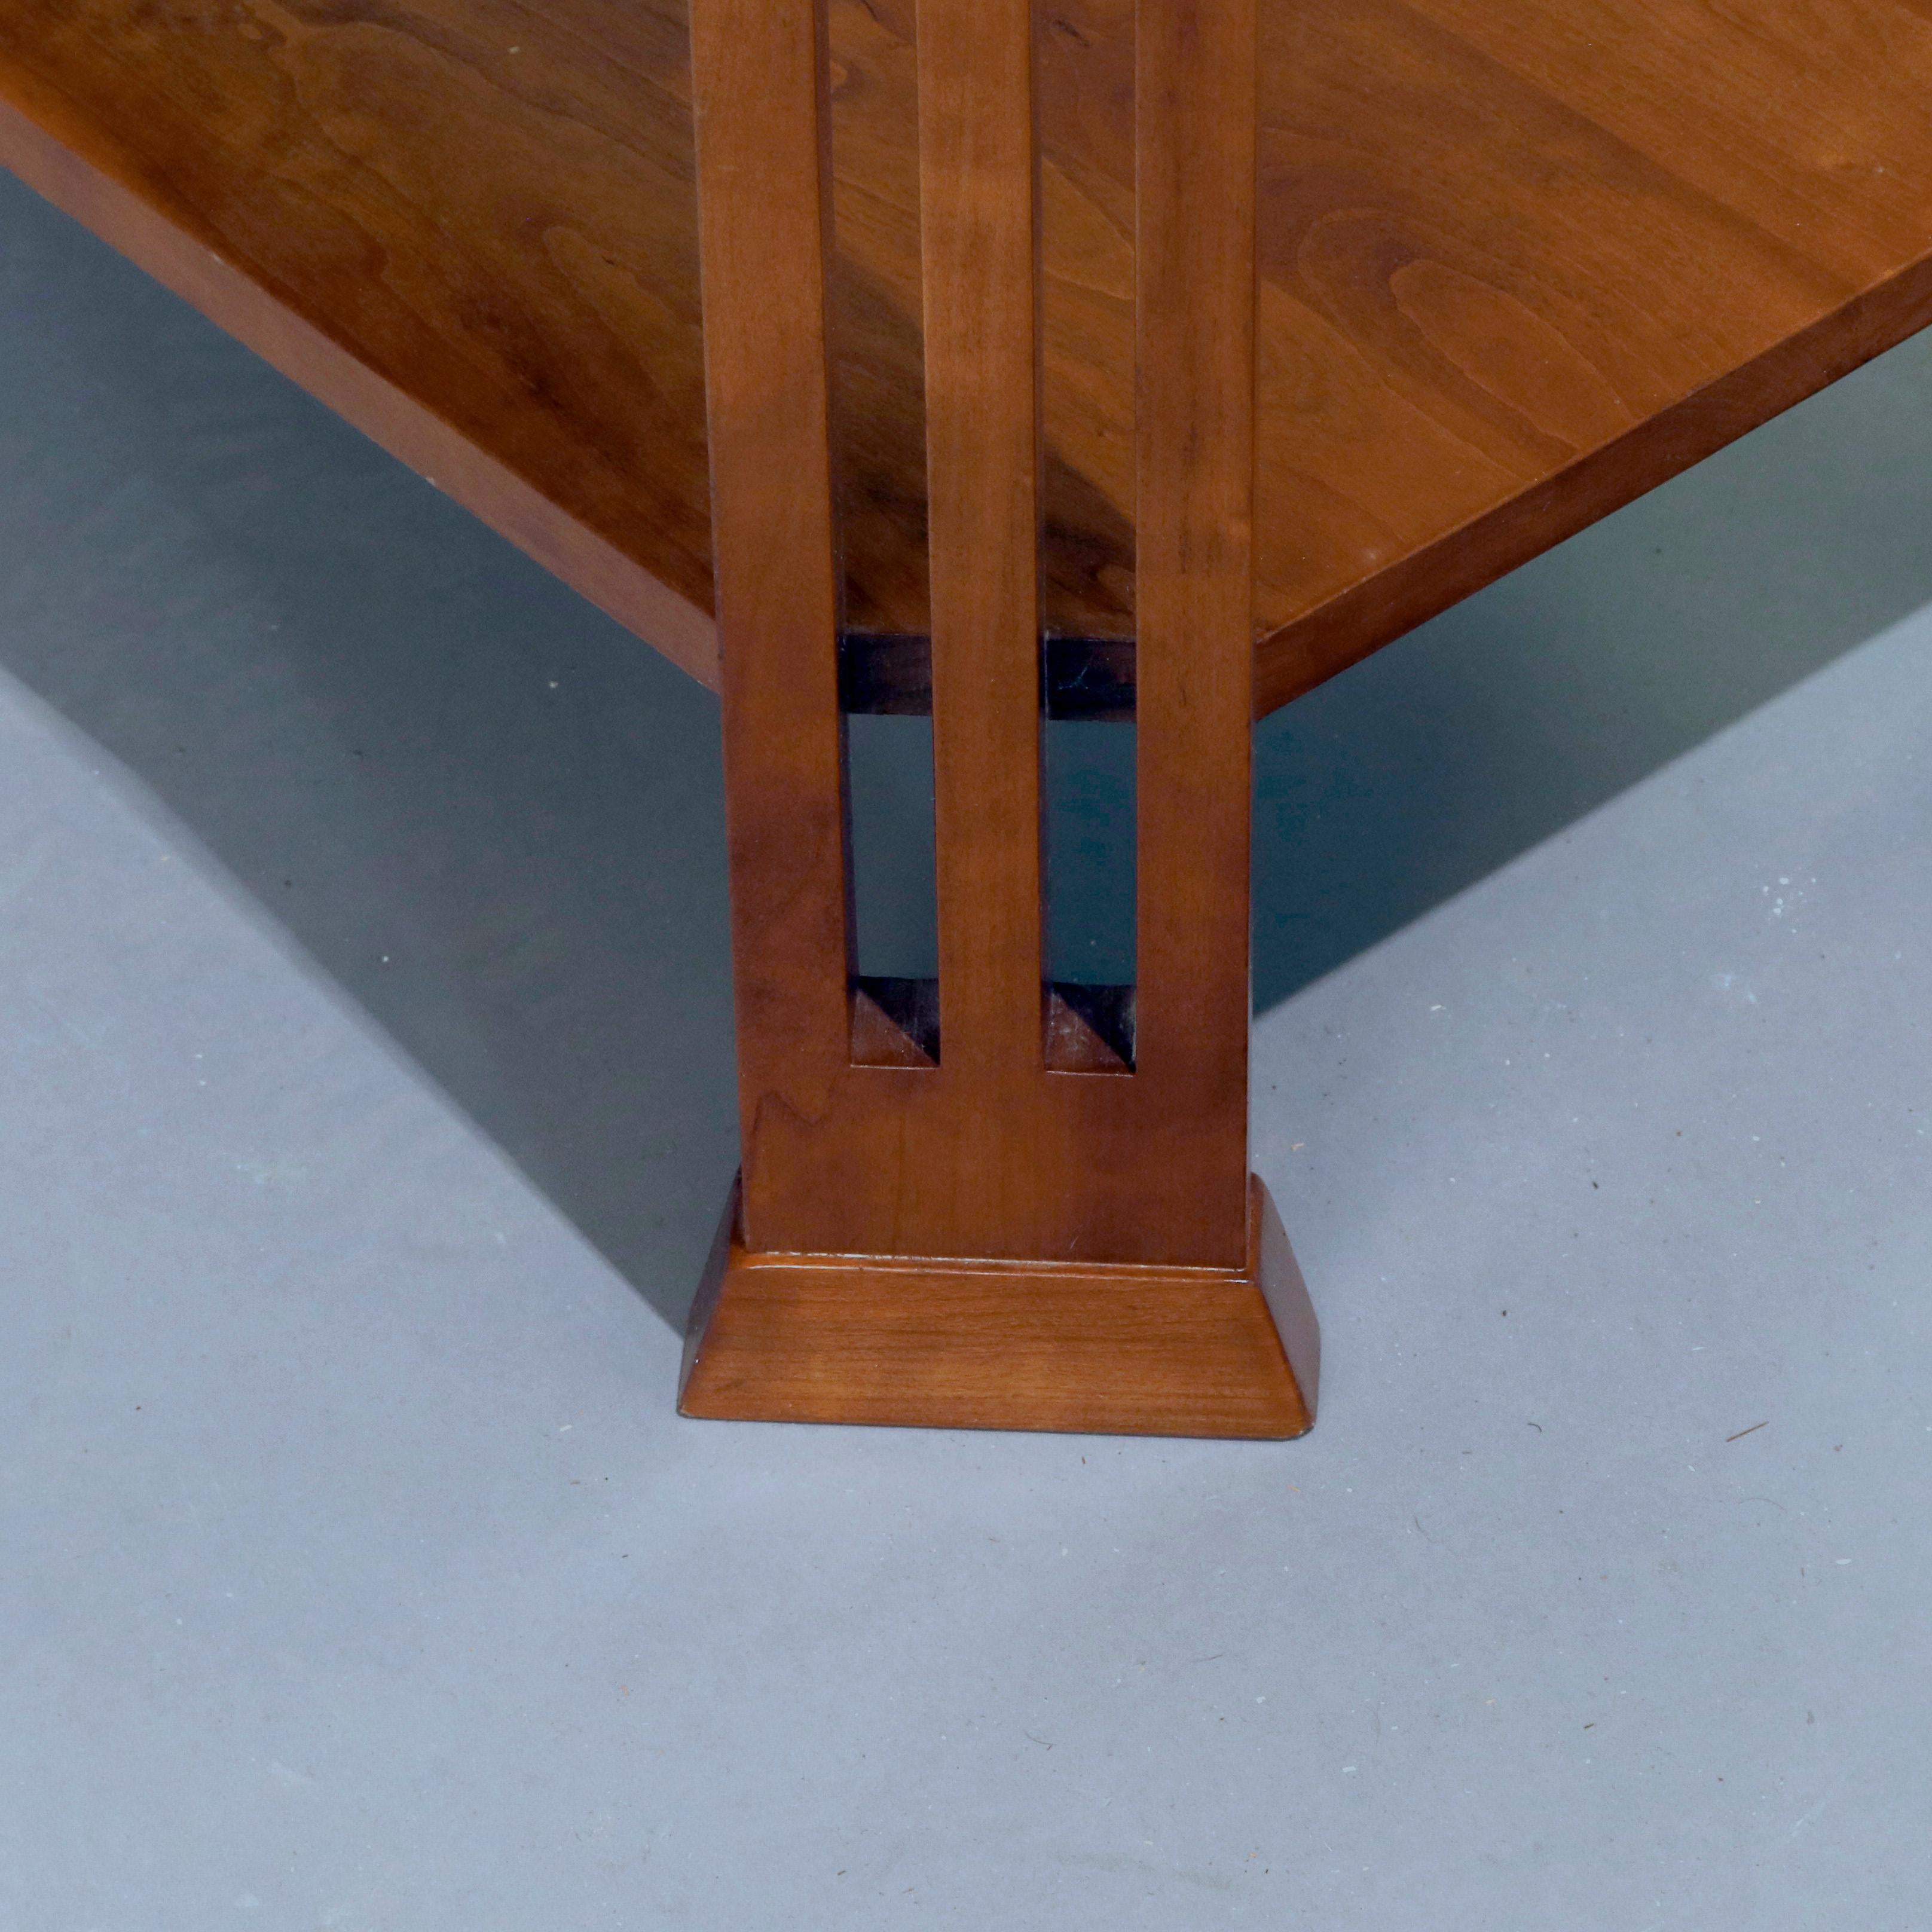 Ebonized Frank Lloyd Wright Prairie School Arts & Crafts Cherry Sofa Table by Stickley